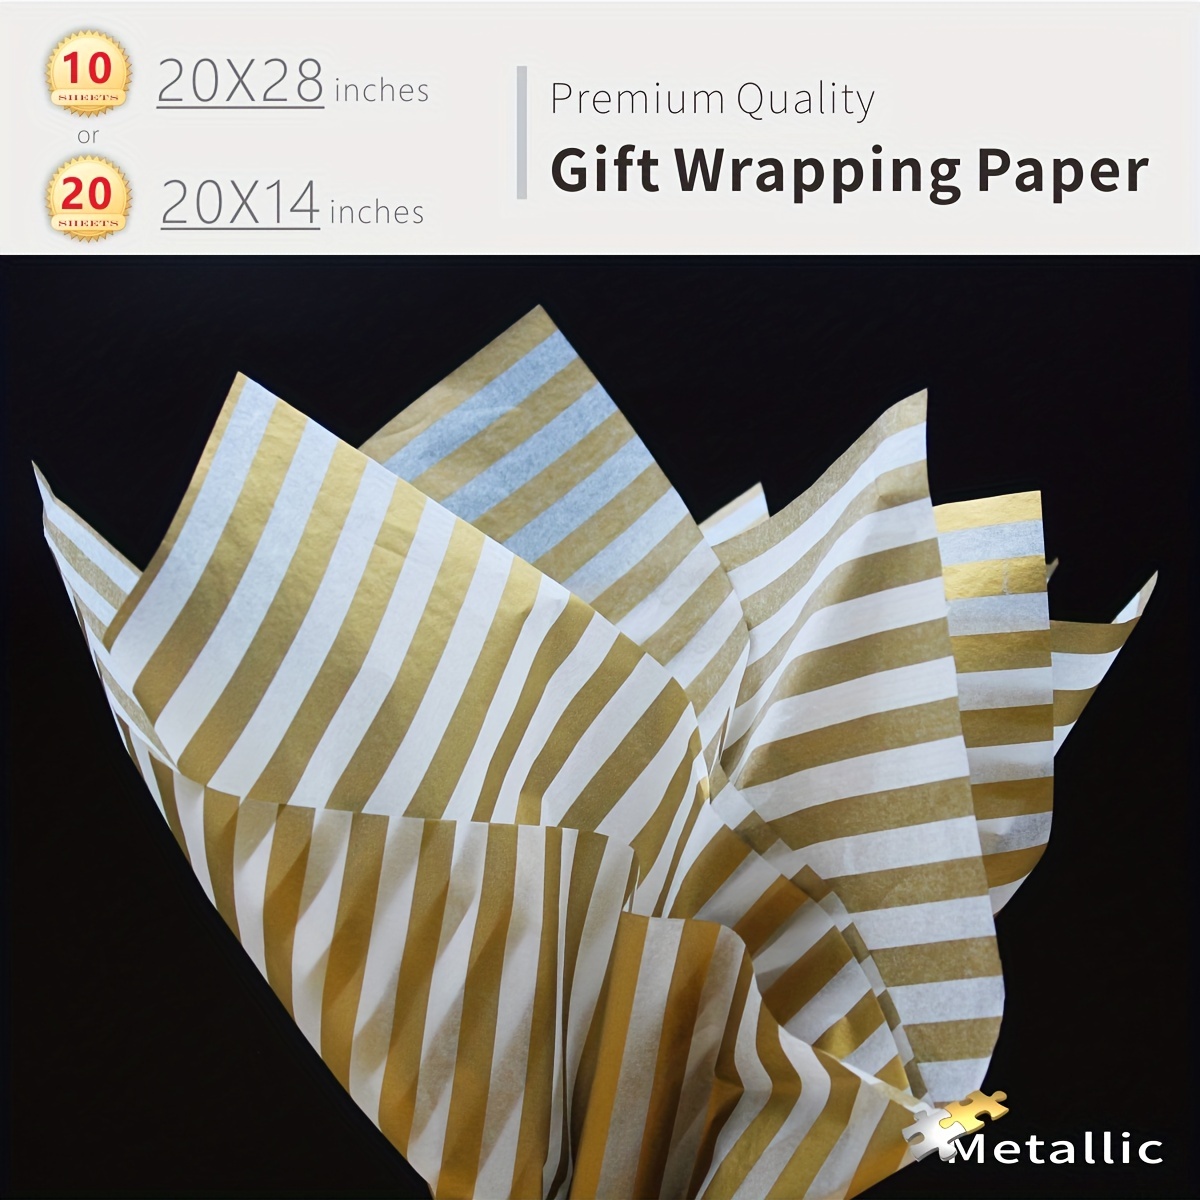 RUSPEPA Papel de seda para envolver regalos, papel de seda blanco perlado  para envoltura de regalo, manualidades de arte, bricolaje, bolsas de